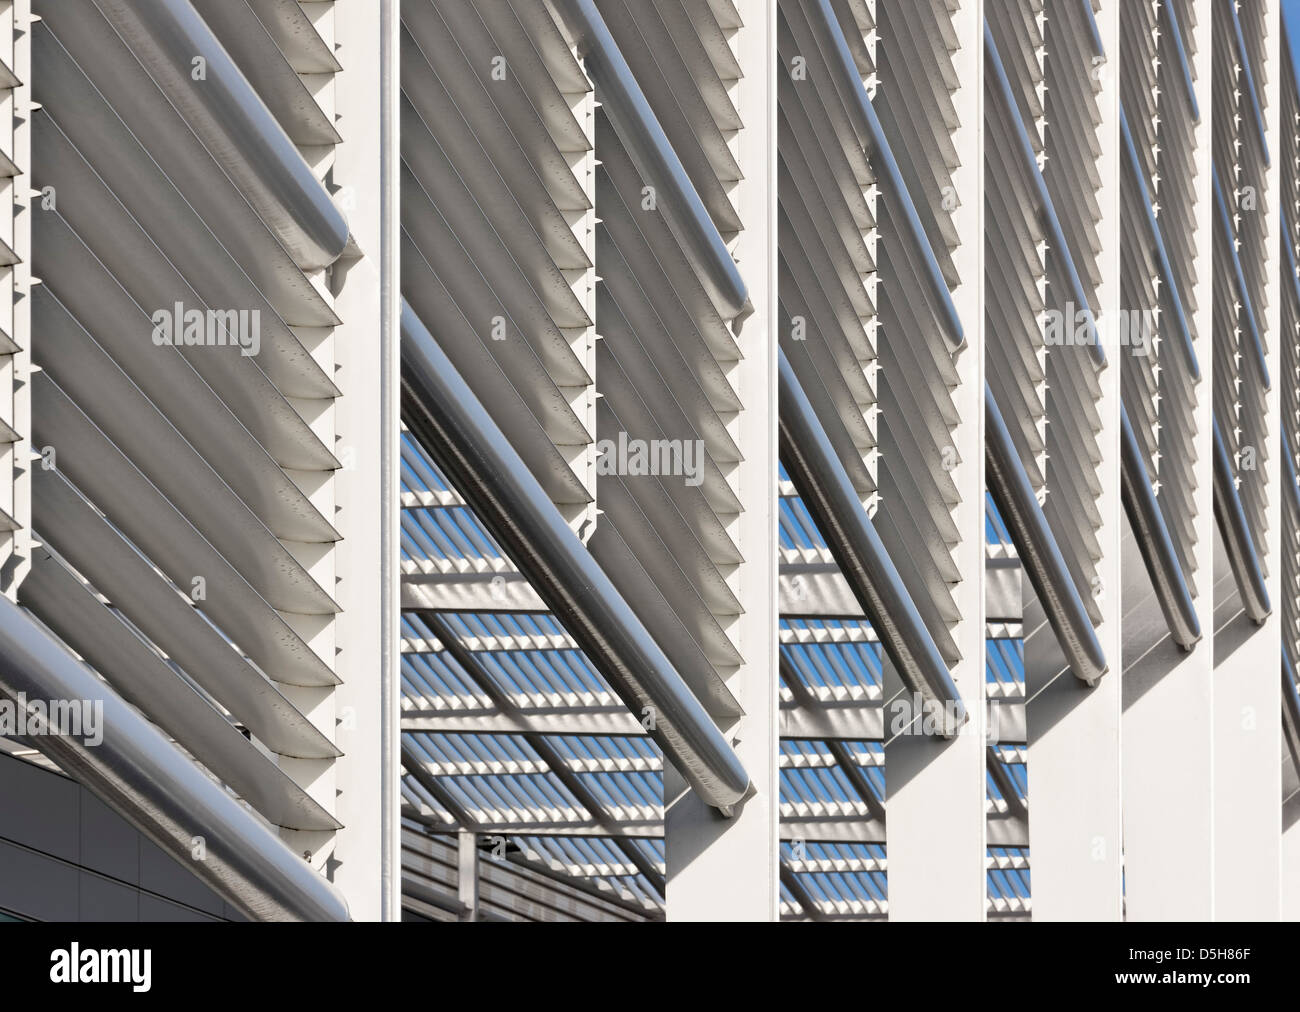 Der Quadrant: MK, Milton Keynes, Großbritannien. Architekt: GMW Architekten, 2012. Verkleidung-Detail. Stockfoto